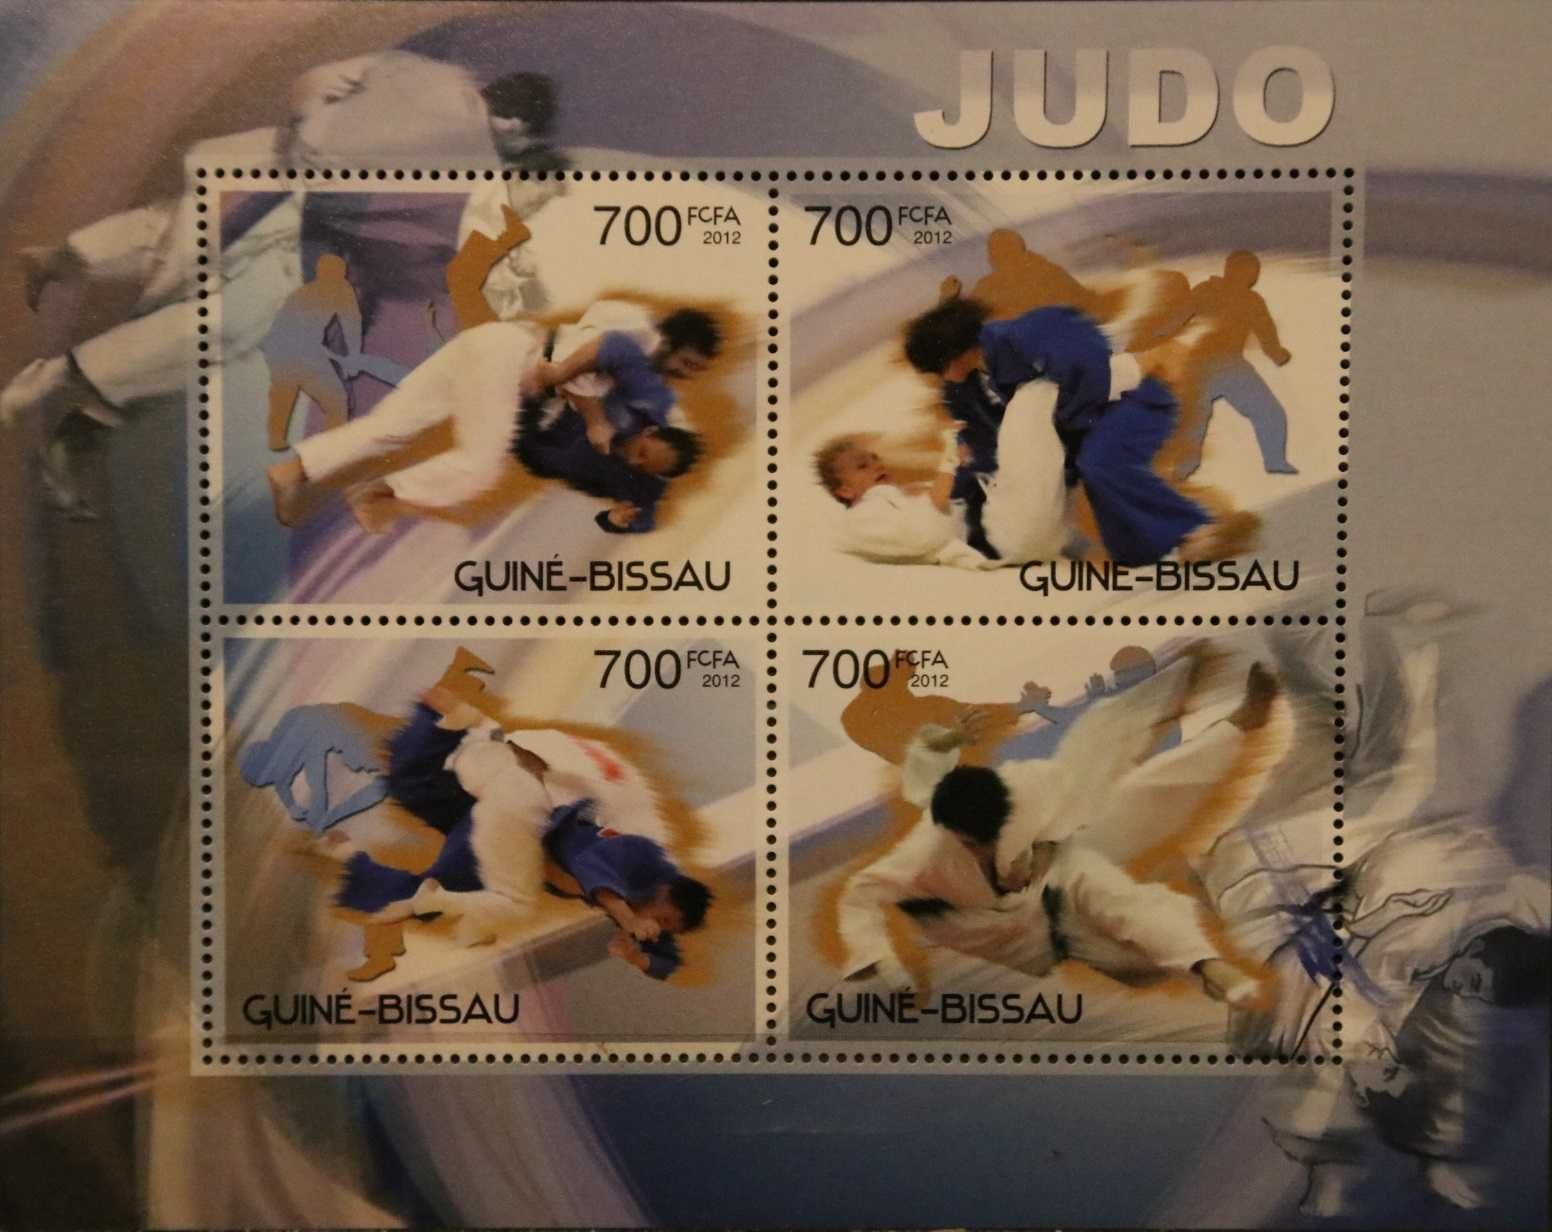 Gwinea Bissau 2012 cena 5,90 zł kat.7€ - judo